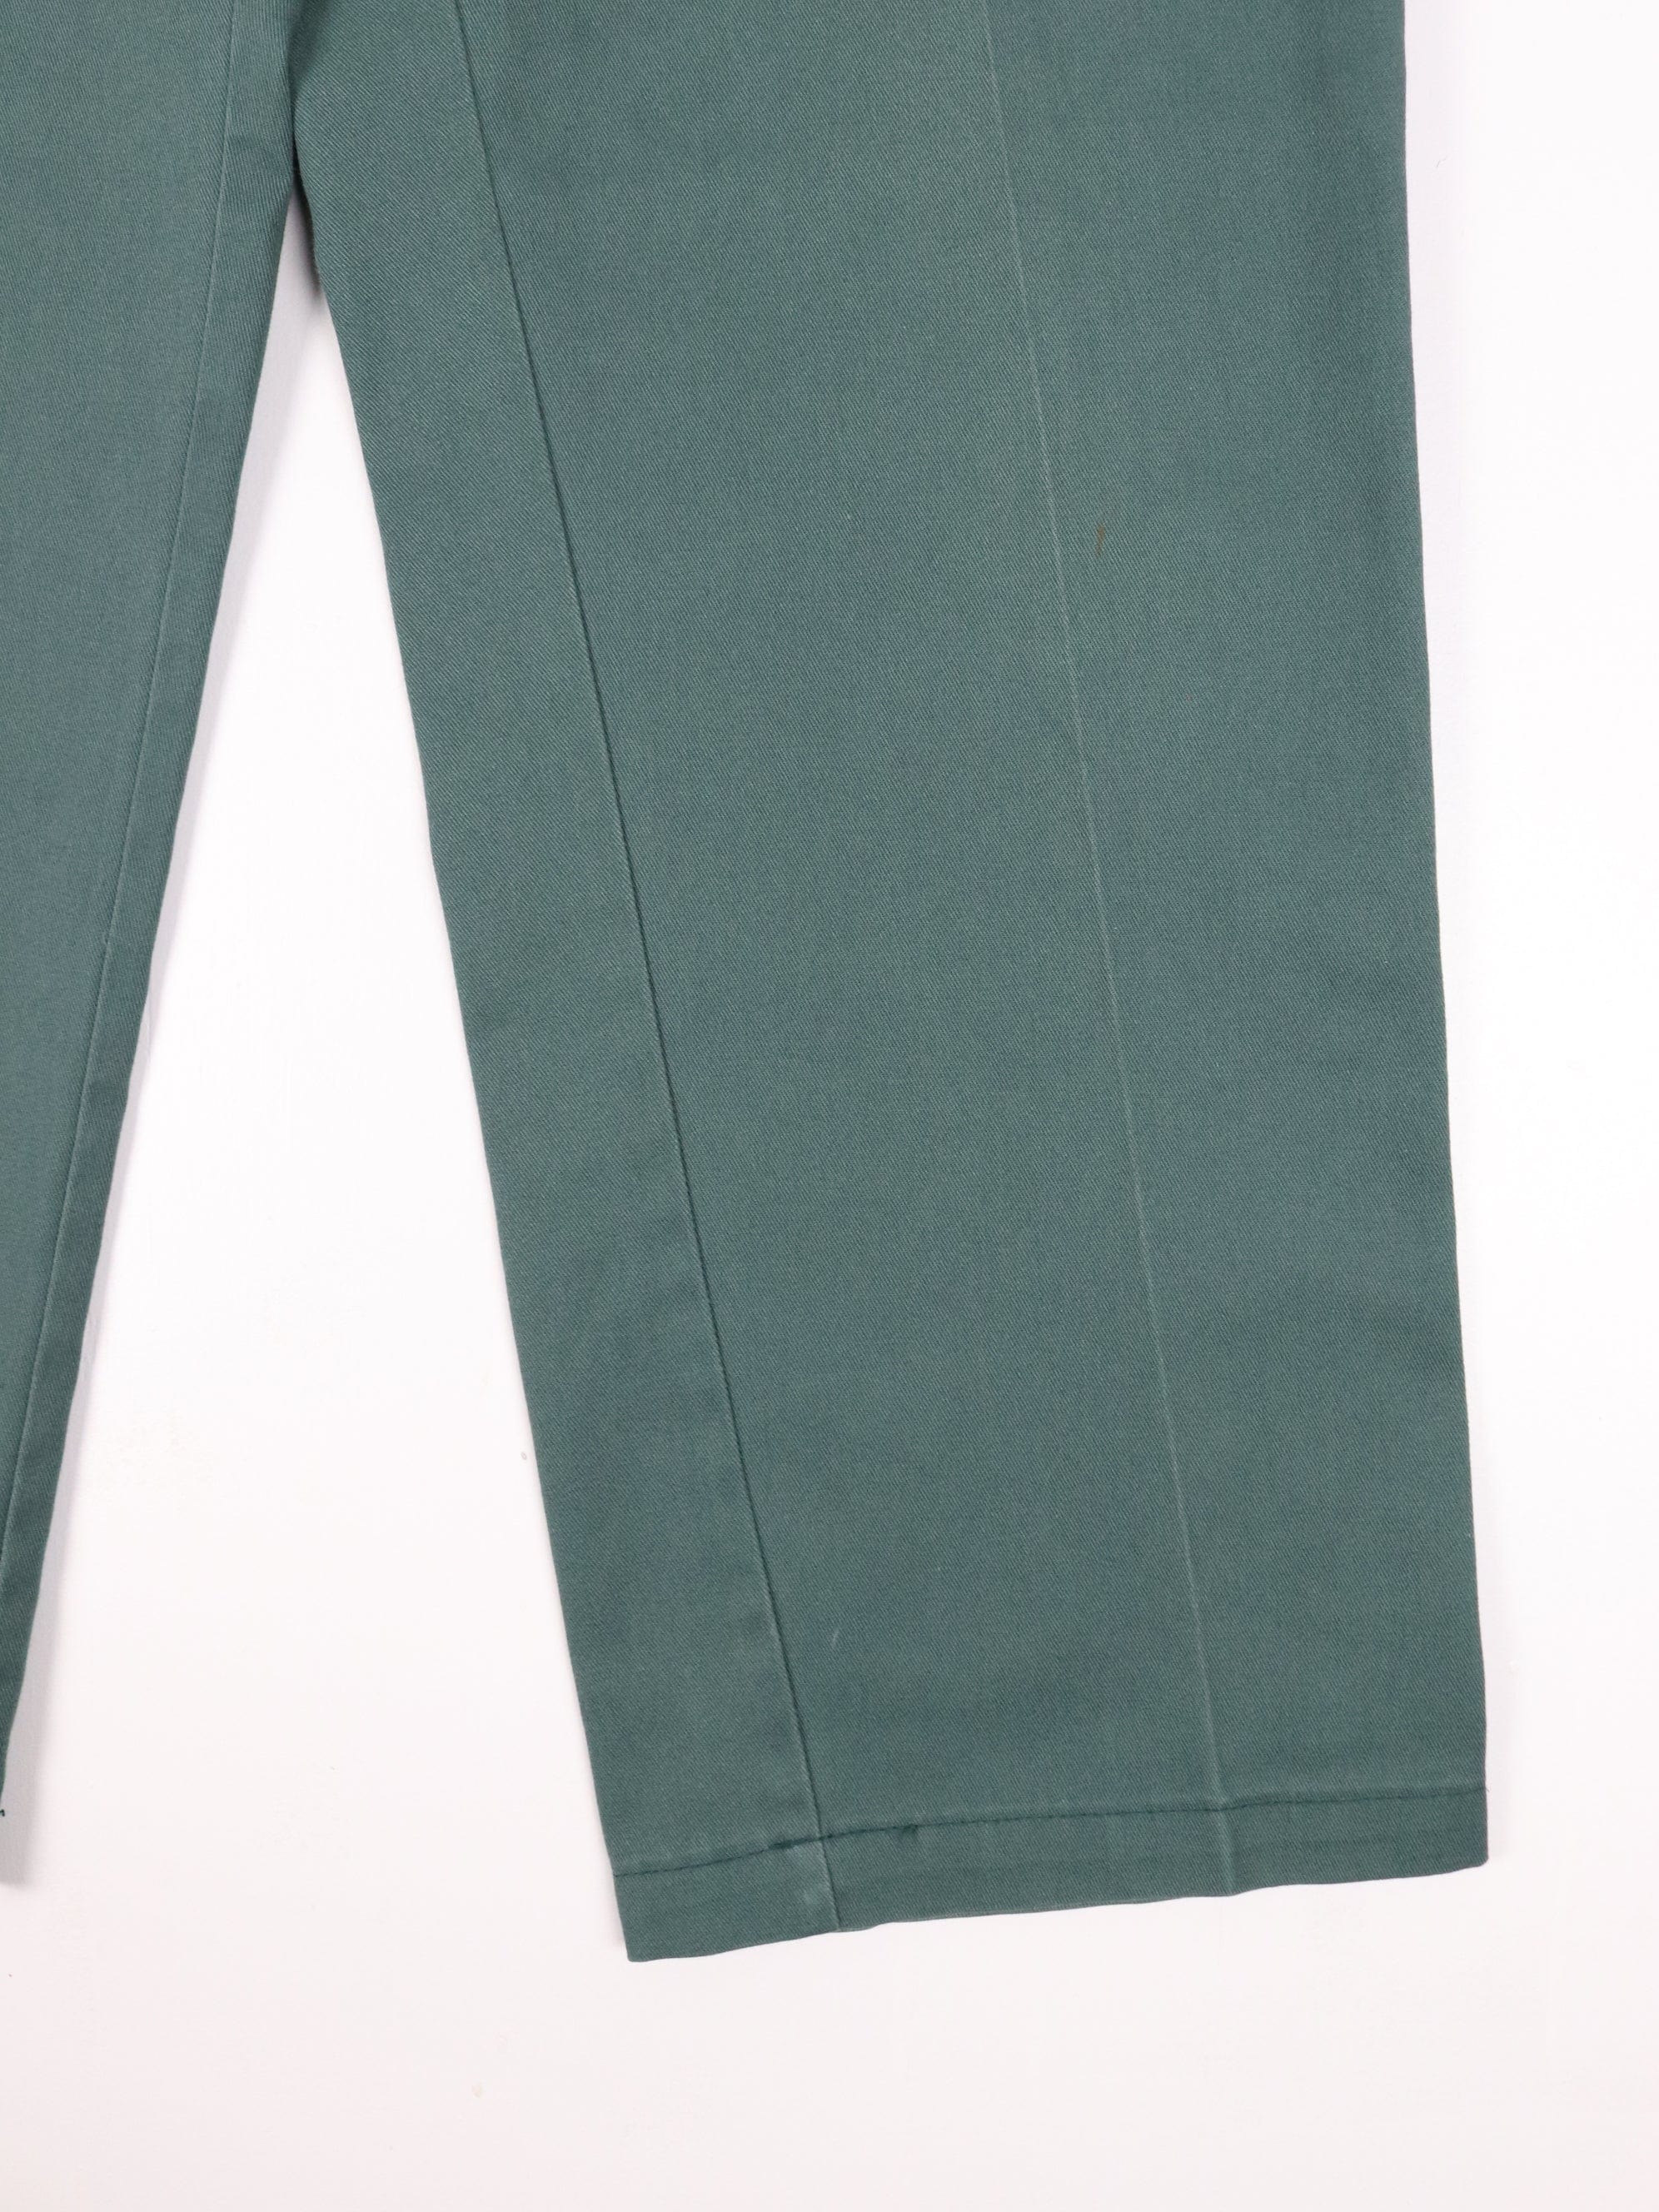 Dickies Pants Mens 34 x 29 Green Pleated Chino Work Wear – Proper Vintage